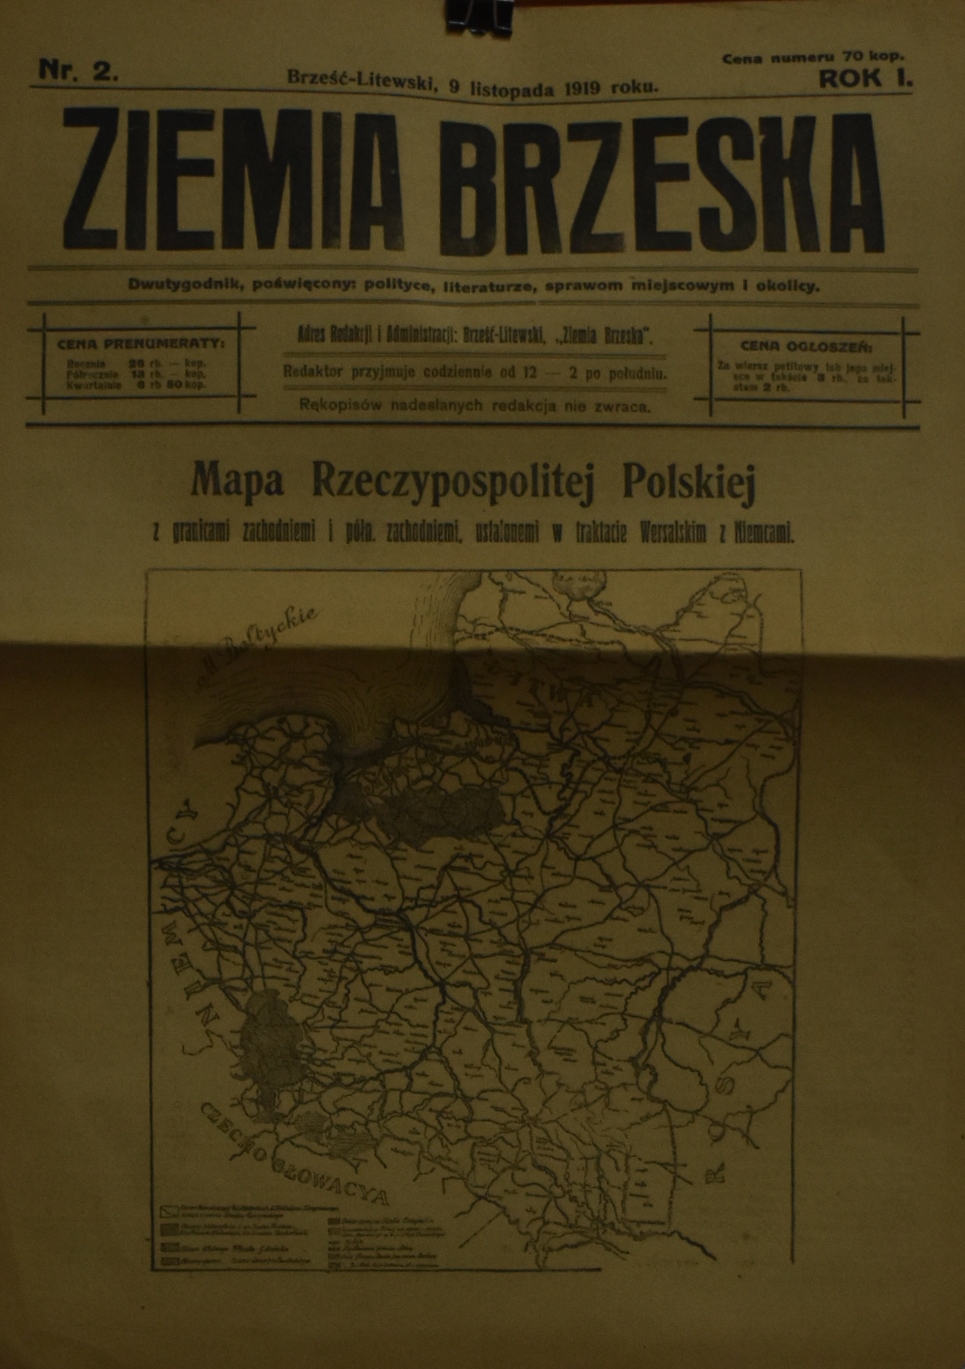 Газета "Ziemia Brzeska" (в перекладі з польської "Брестська земля"), 9 листопада 1919 року